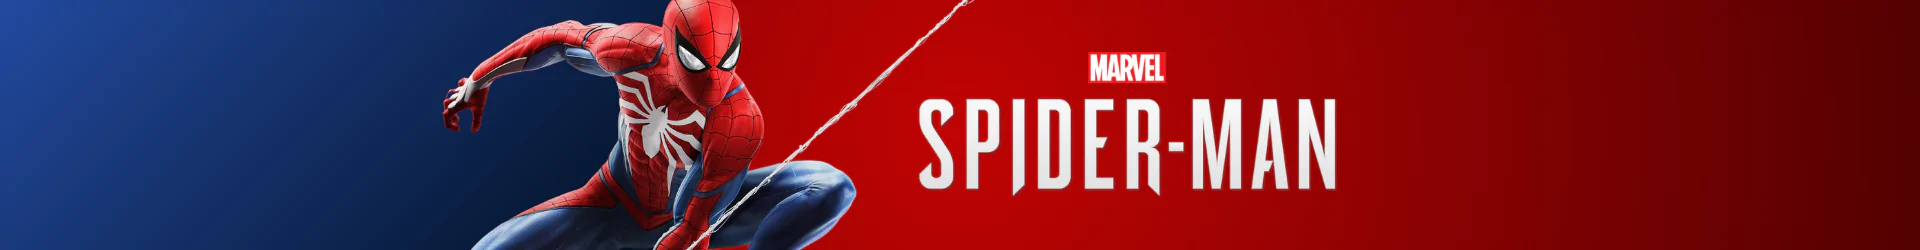 Spider-Man earphones banner